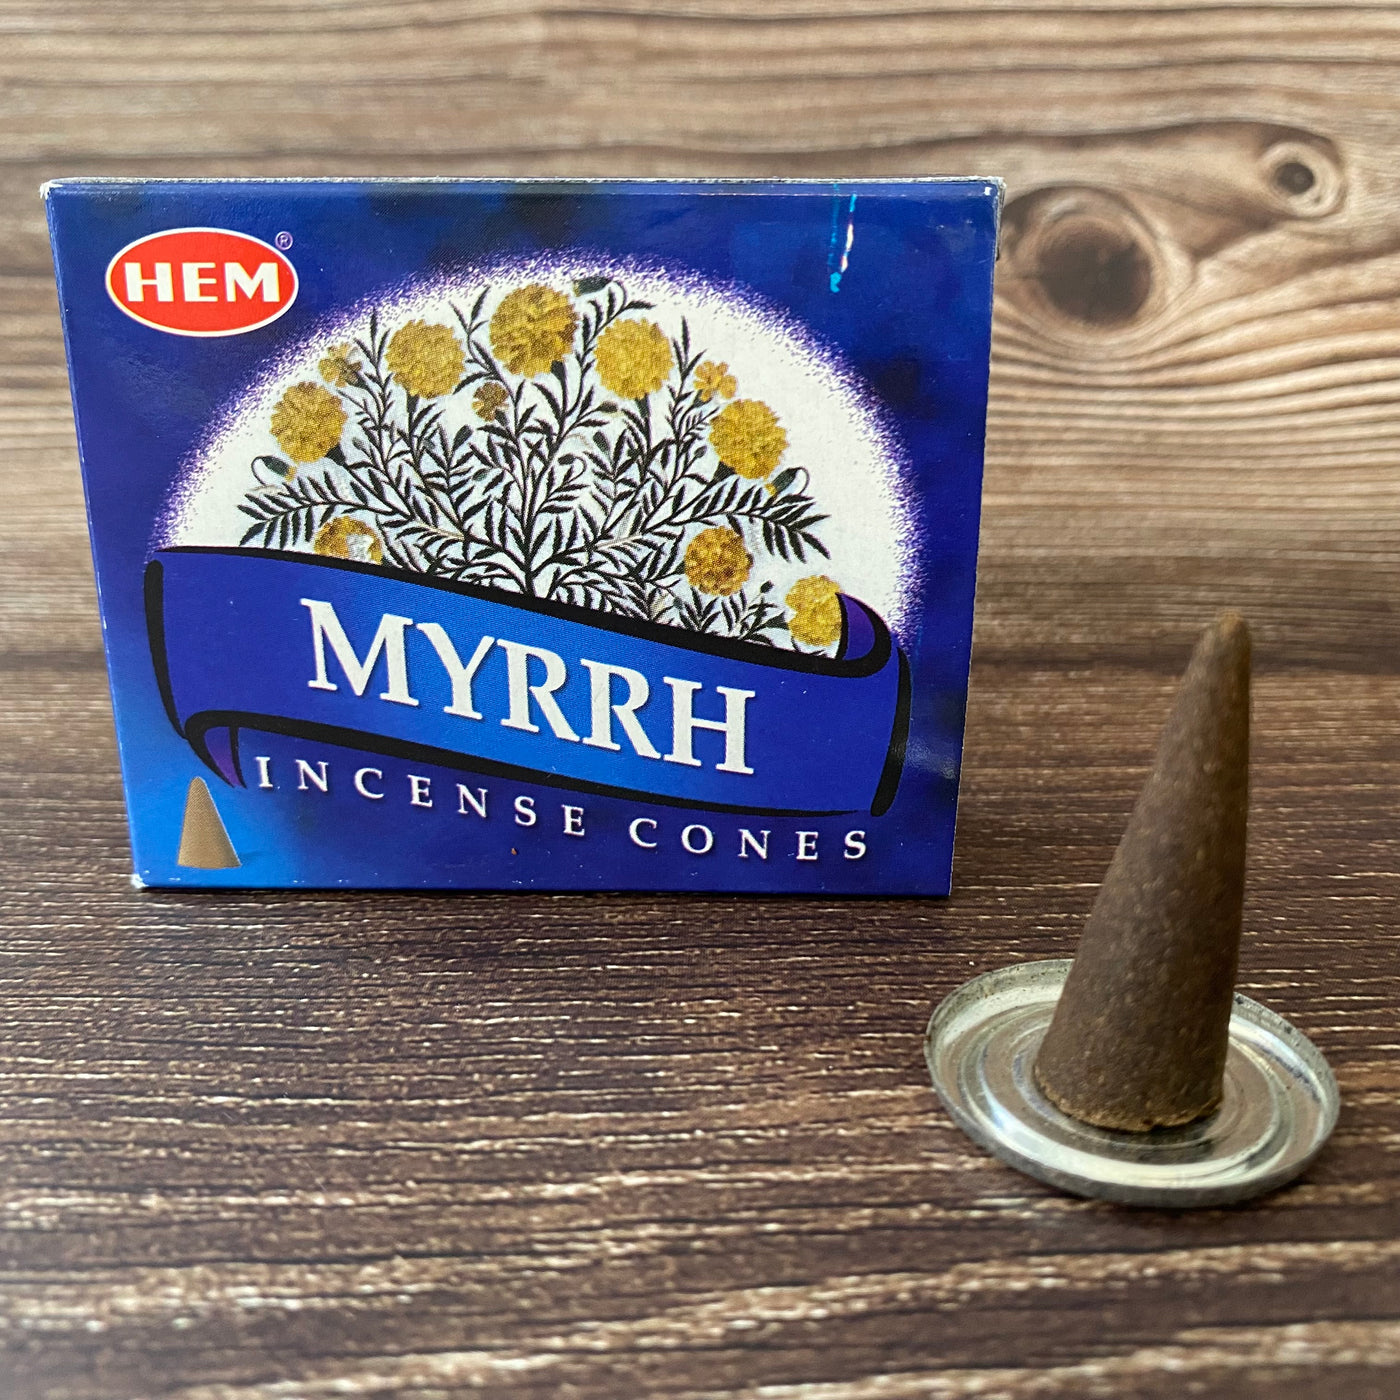 HEM - Myrrh Cone Incense (10 pack)